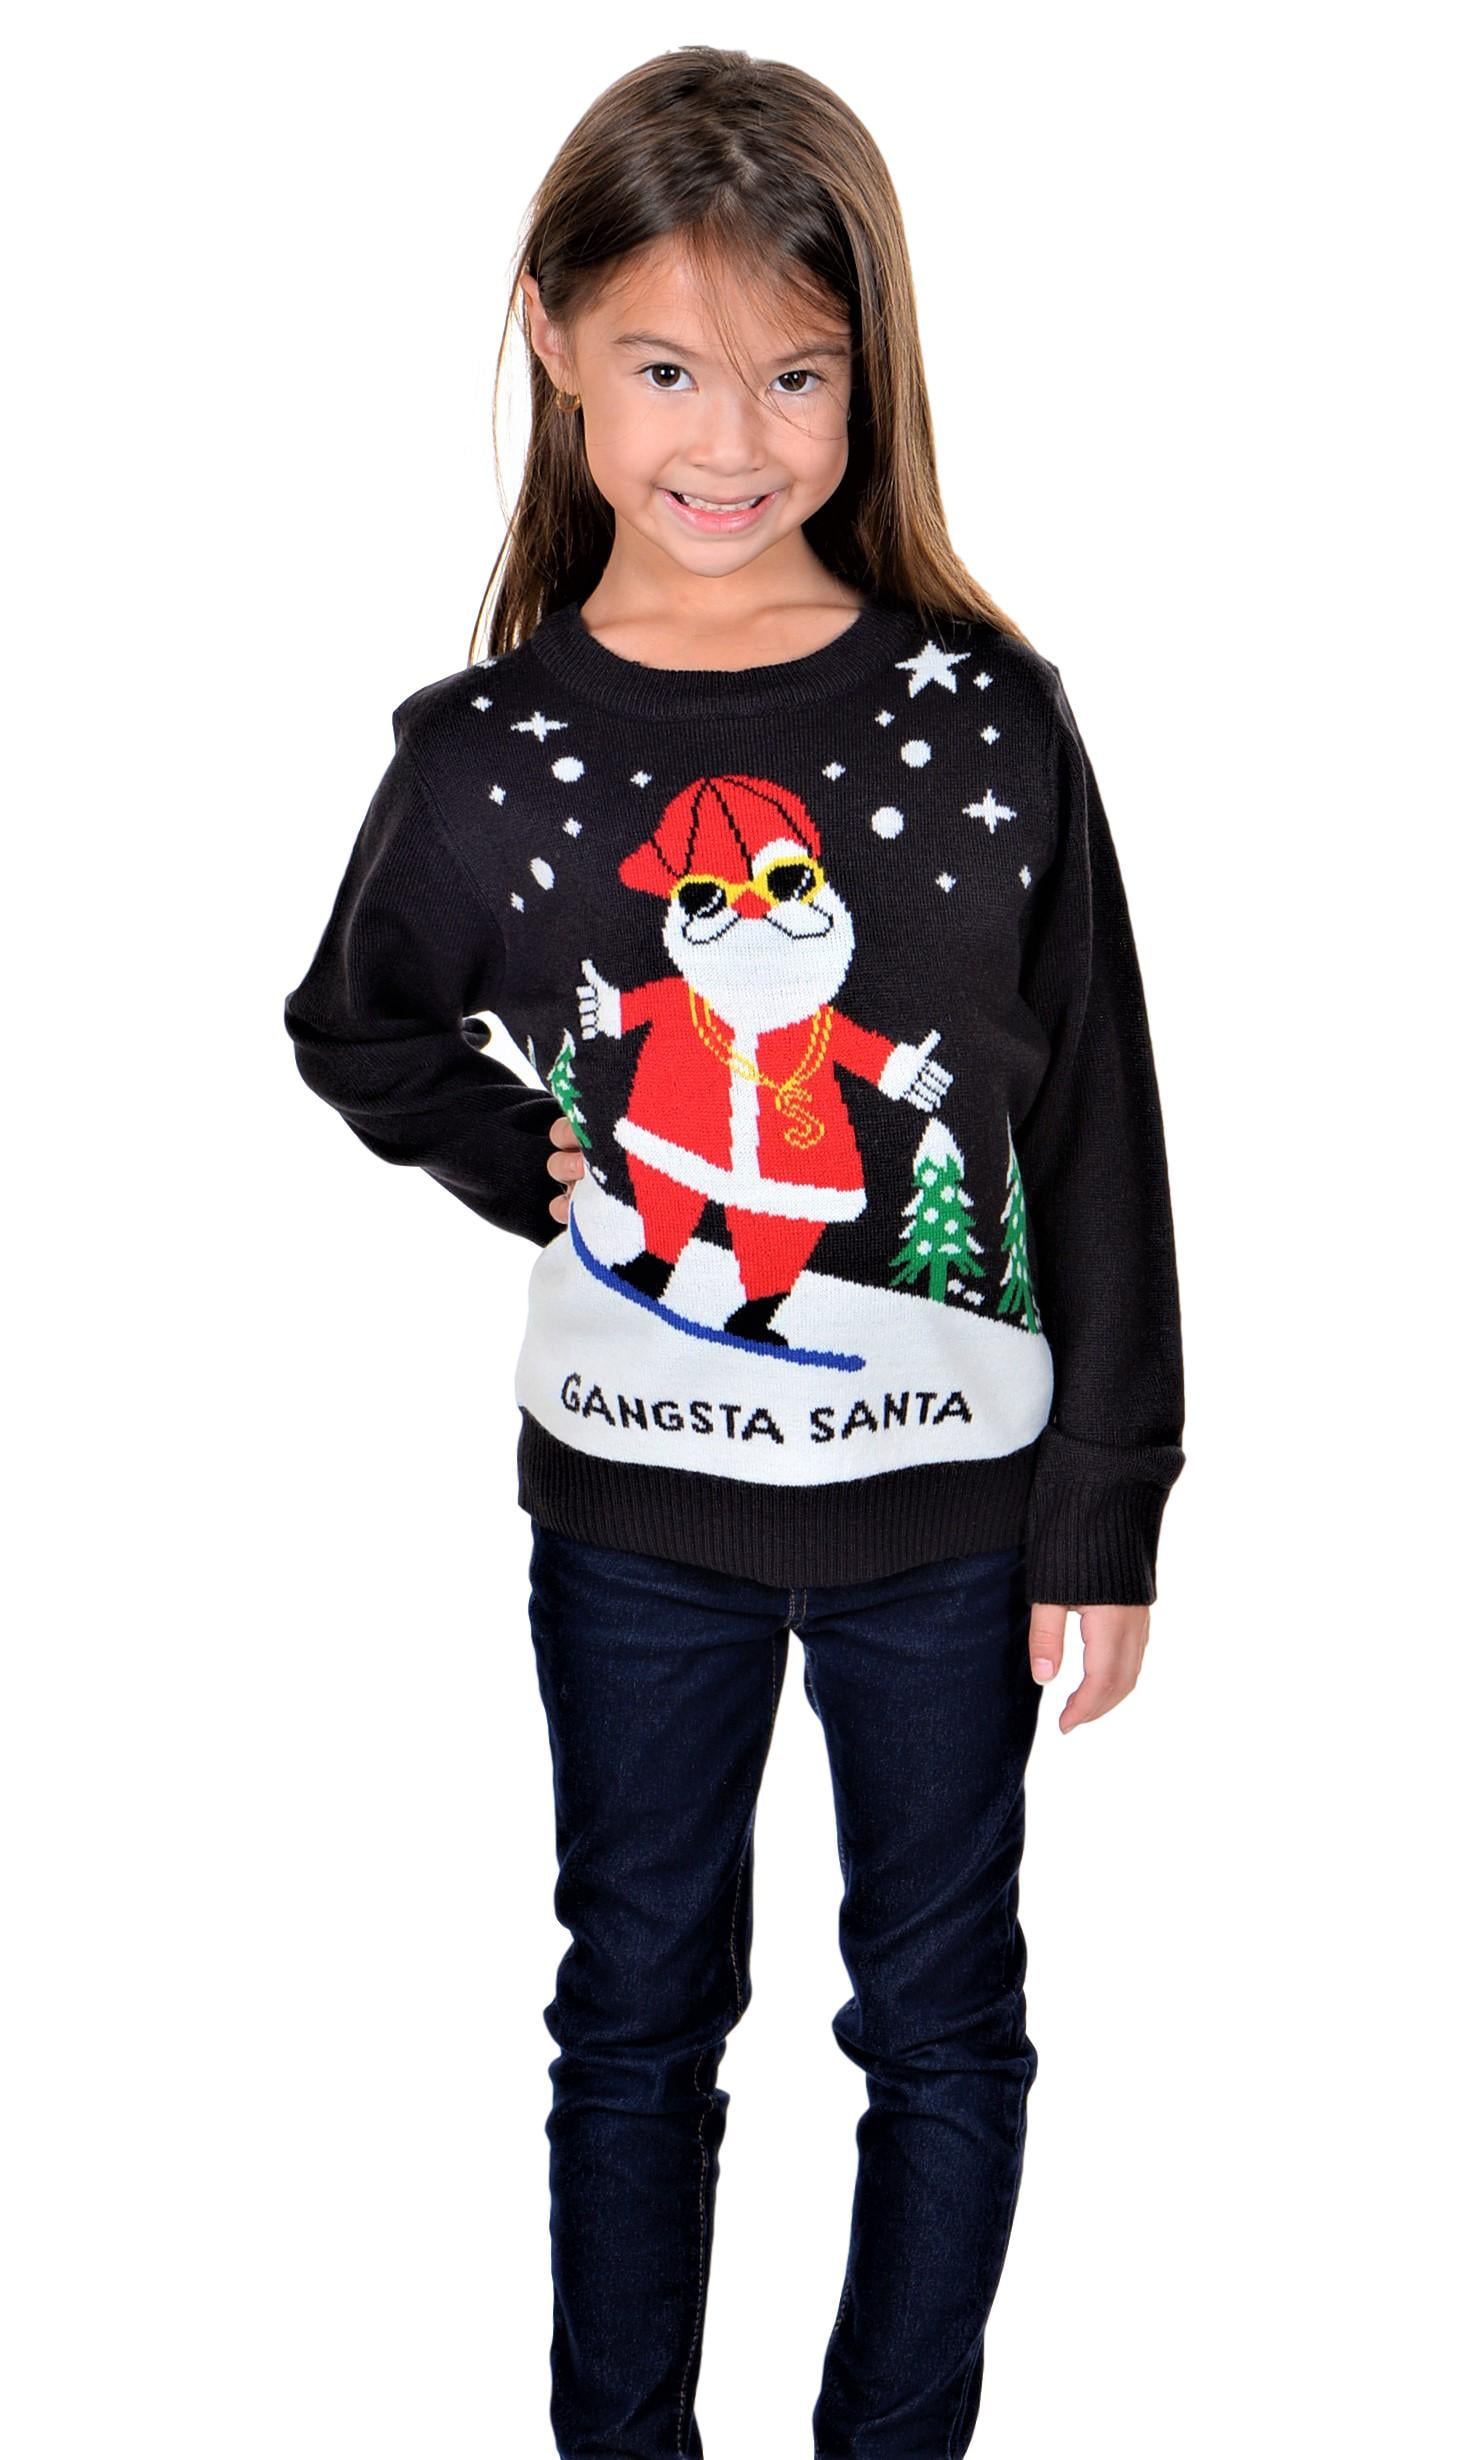 Cho dù bạn đang tìm kiếm chiếc áo len Giáng sinh xấu xí cho bé trai hay bé gái của mình, chiếc KESIS Children Gangsta Santa Ugly Christmas Sweater 3-4Y của Walmart.com chắc chắn sẽ làm hài lòng cả bạn và con của bạn. Với thiết kế vô cùng độc đáo với hình ảnh của ông già Noel Gangsta, áo len này sẽ mang đến cho các bé niềm vui và sự kỳ diệu trong mùa Giáng sinh. Hãy ghé qua chúng tôi để tìm kiếm những chiếc áo len Giáng sinh xấu xí cho trẻ em của bạn.